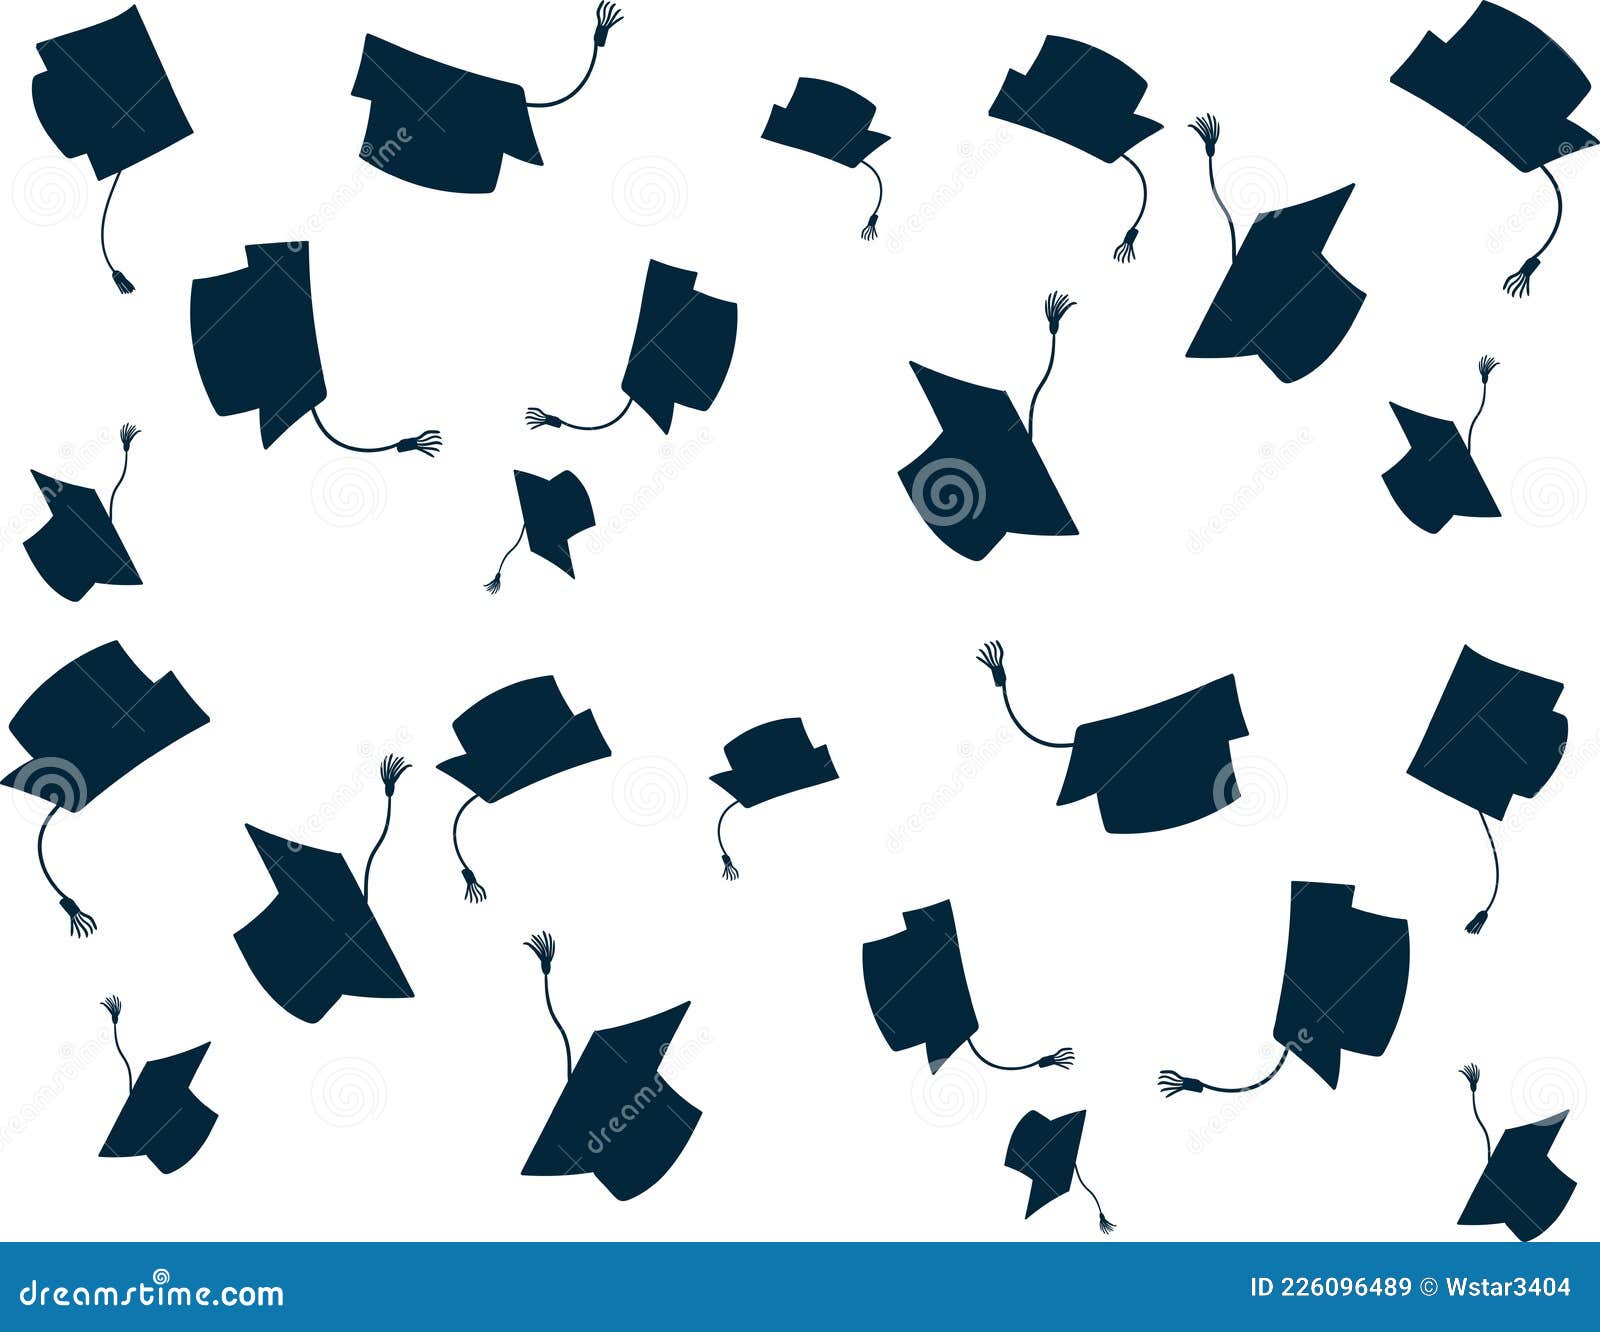 Mũ tốt nghiệp màu xanh (blue graduation cap): Mũ tốt nghiệp màu xanh đánh dấu một bước ngoặt quan trọng của cuộc đời. Nó tượng trưng cho sự cống hiến và nỗ lực trong suốt những năm học. Hãy ngắm nhìn chiếc mũ này trong hình ảnh, và cùng nhìn lại những kỷ niệm đáng nhớ trong suốt quá trình học tập.